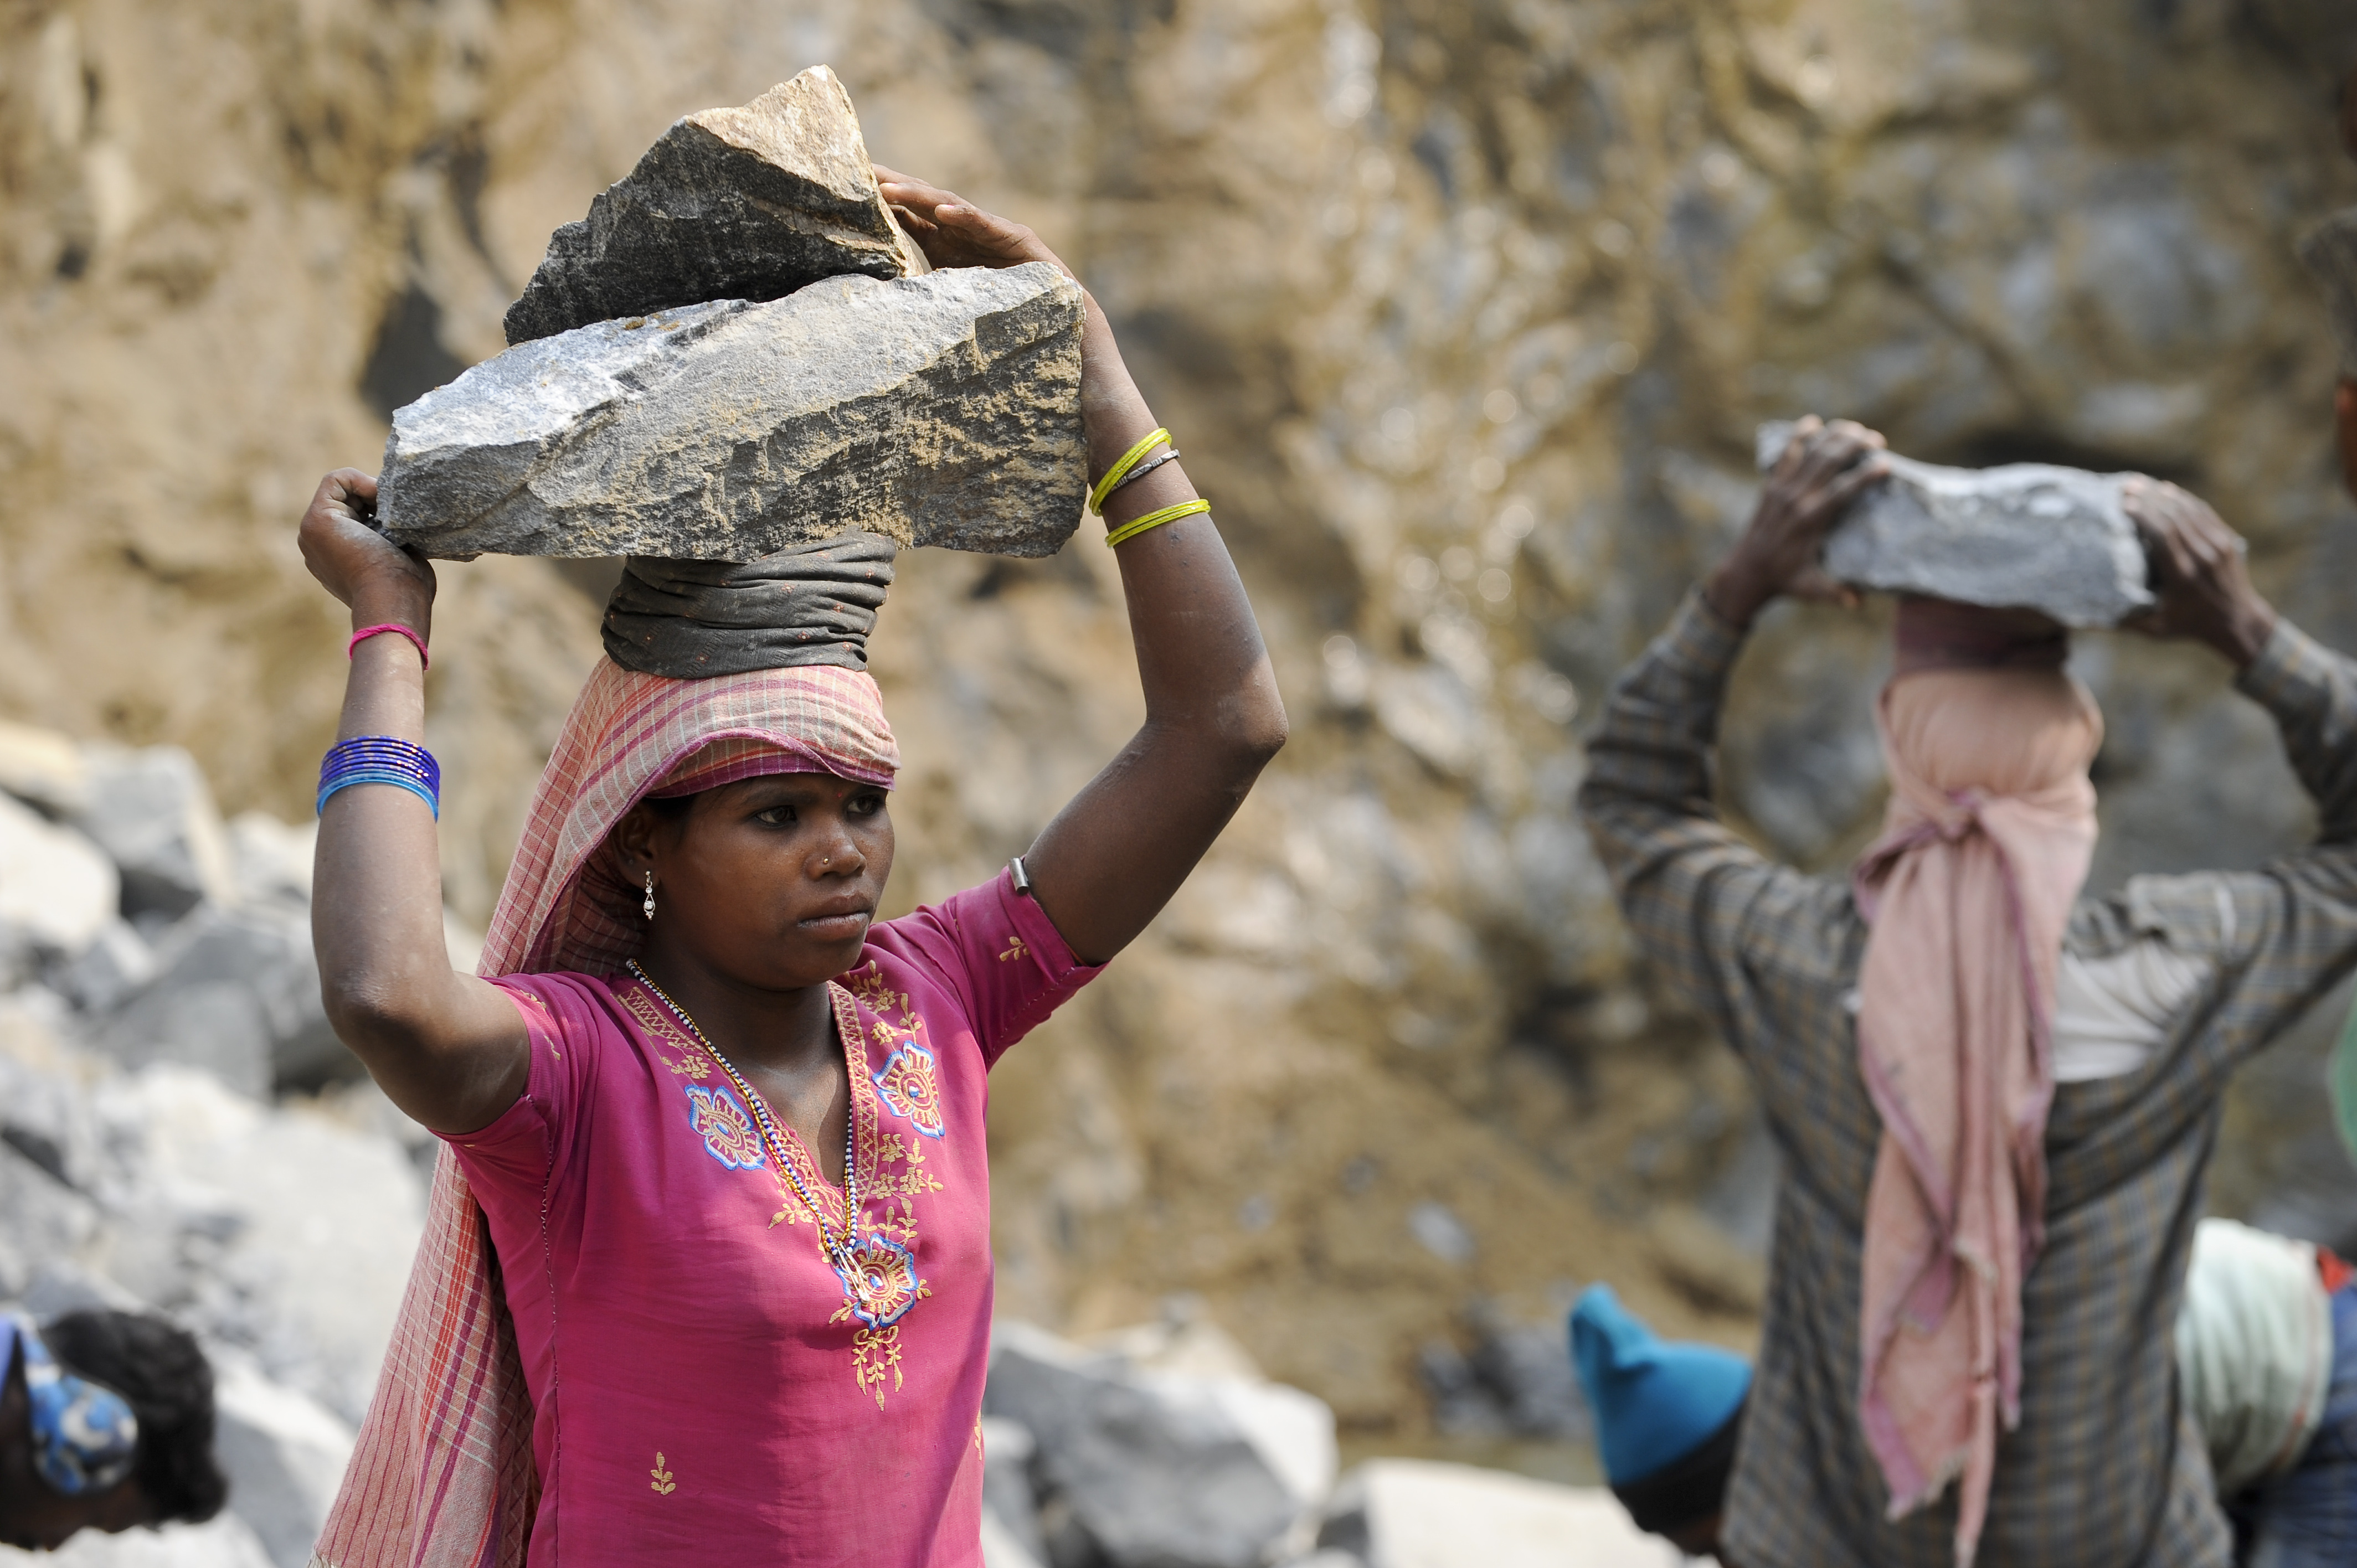 Menschen der untersten Kasten in Indien arbeiten in einem Steinbruch